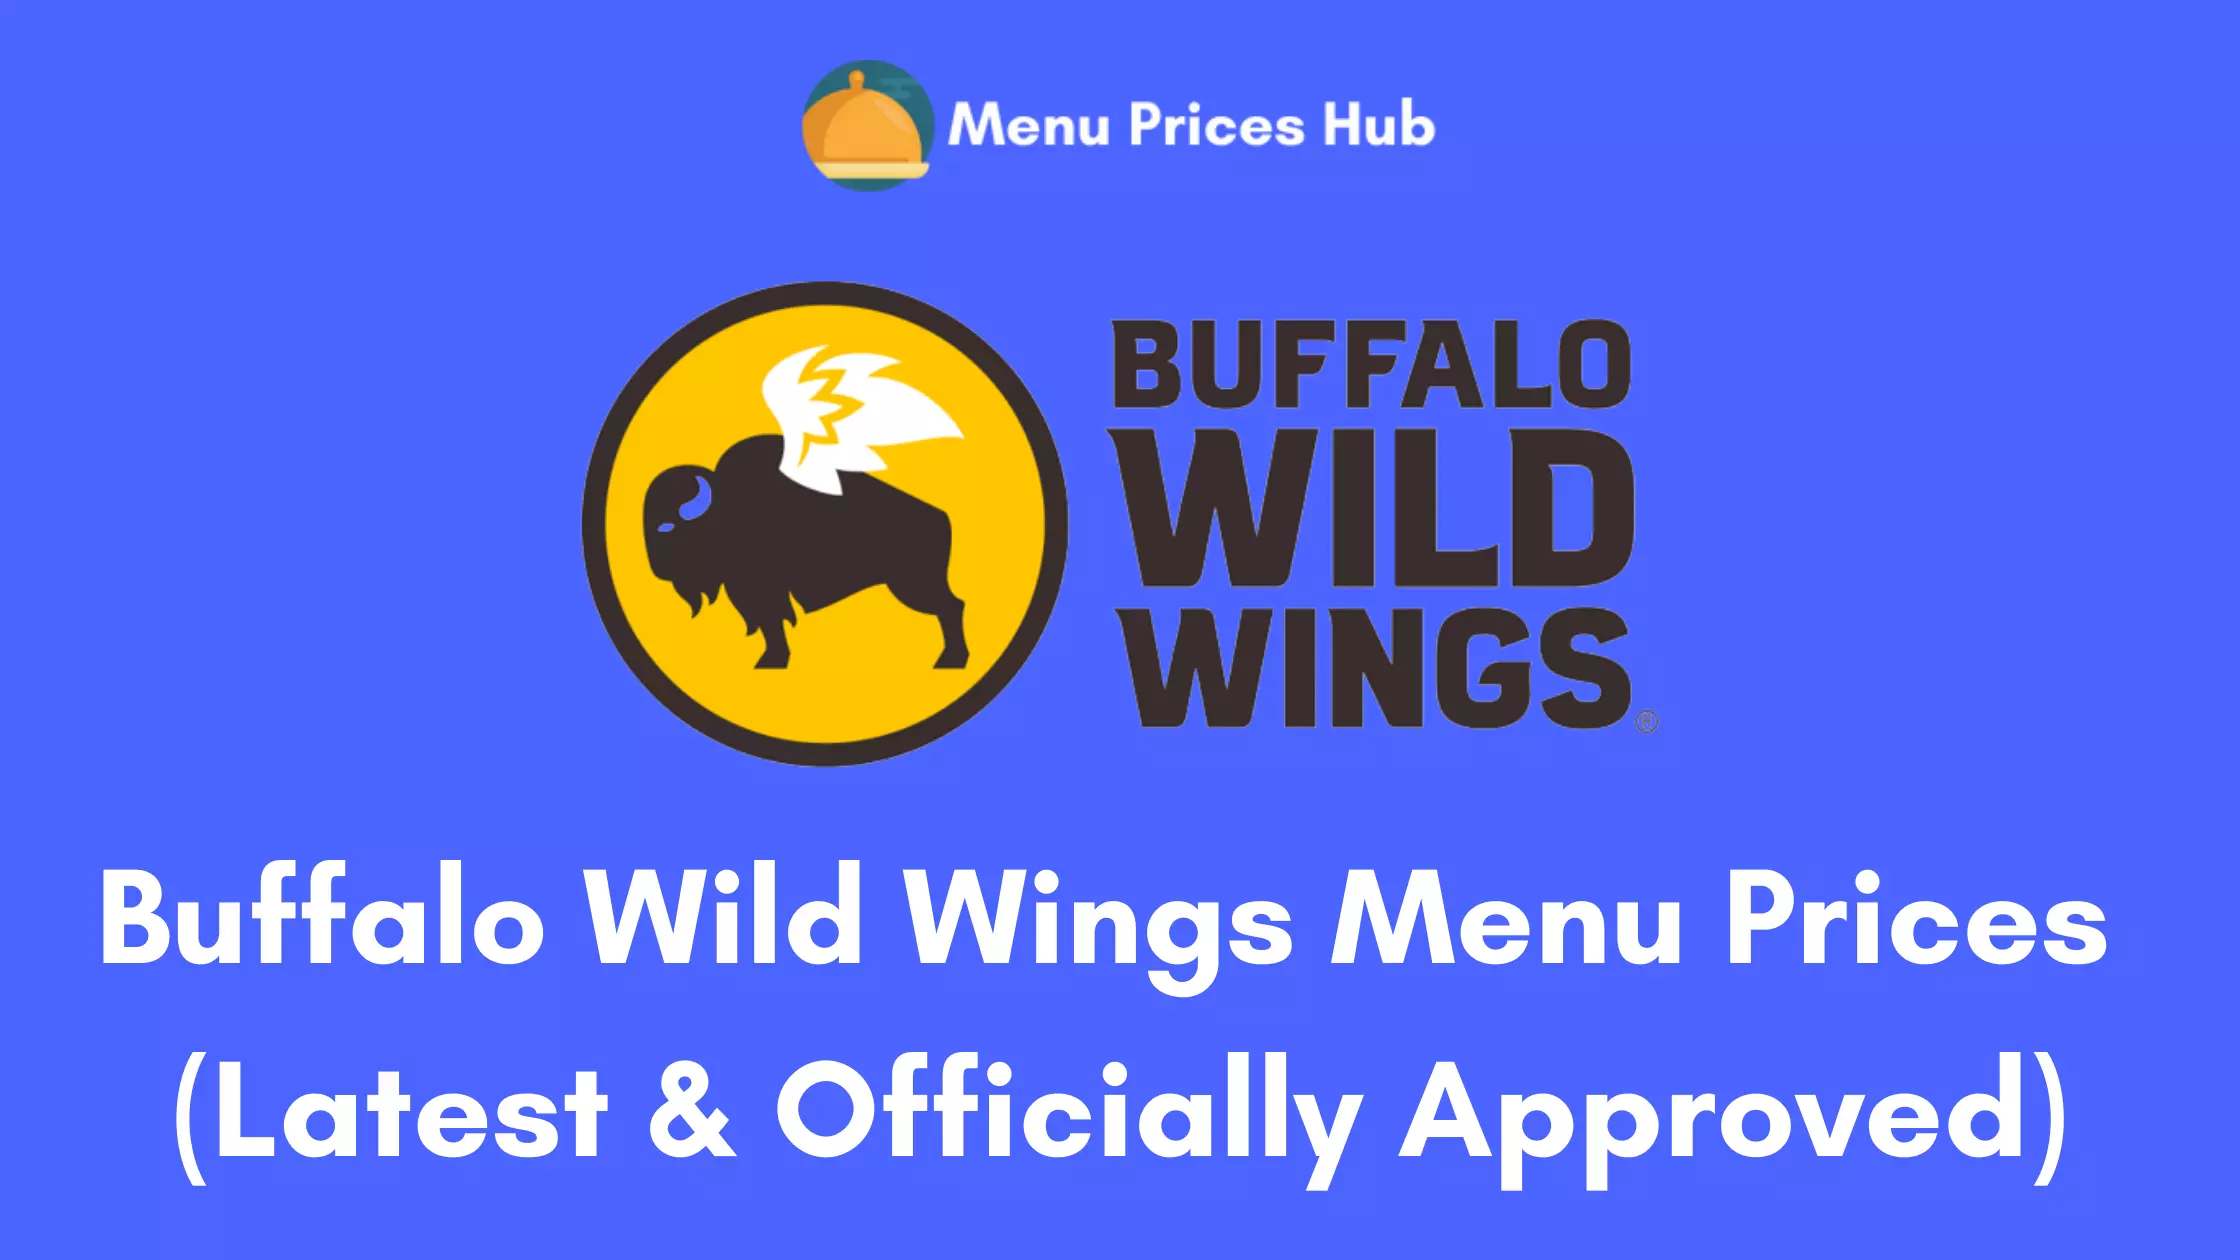 Buffalo Wild Wings menu prices